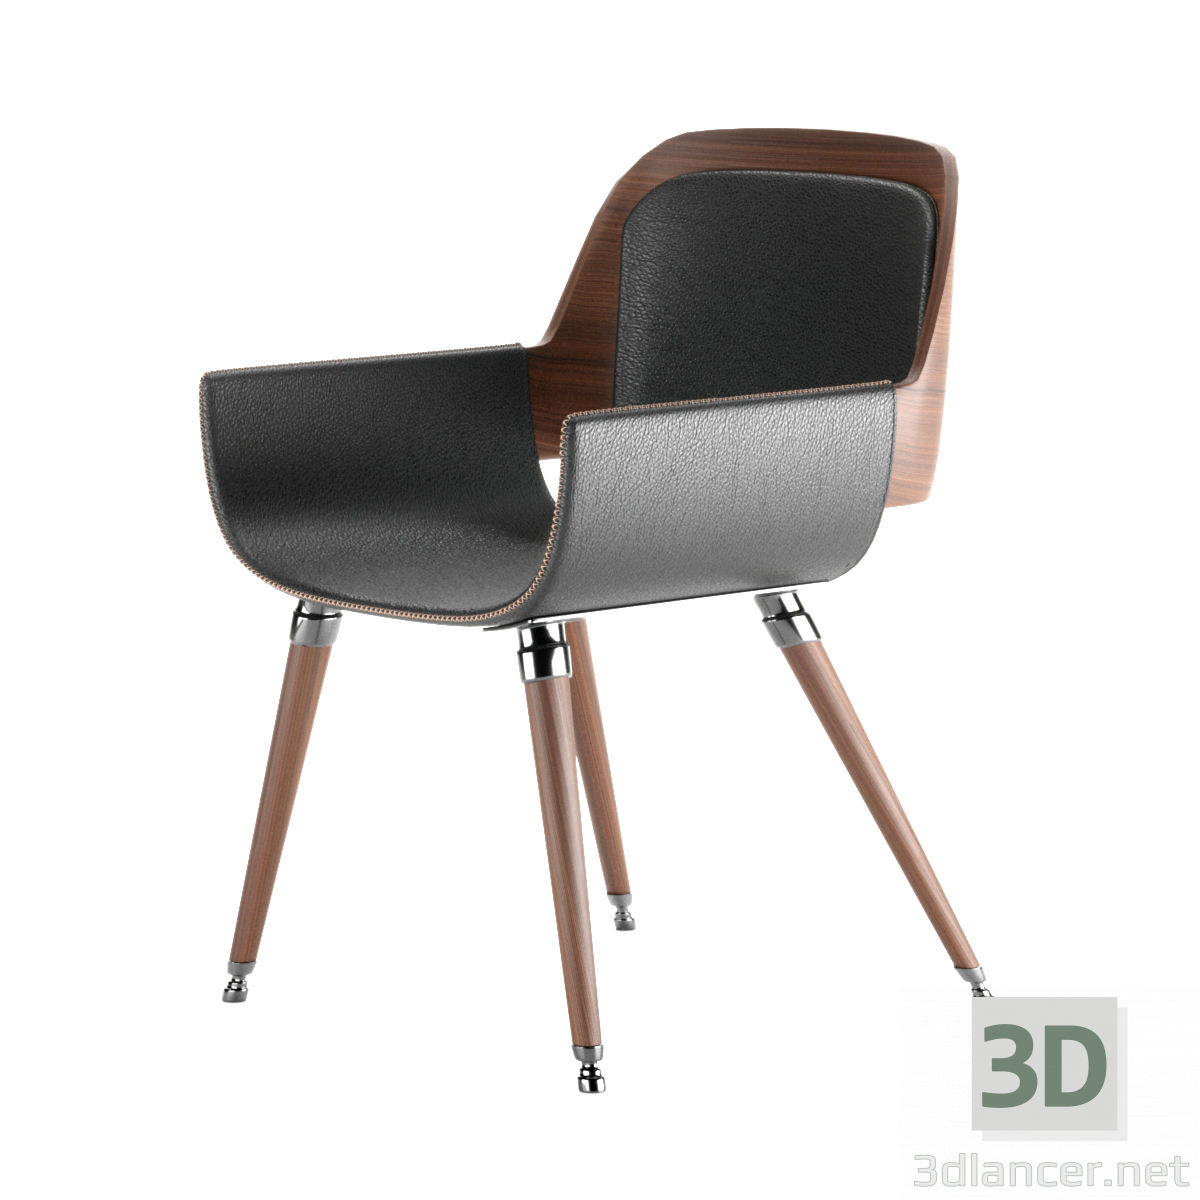 3 डी कुरसी मॉडल खरीद - रेंडर